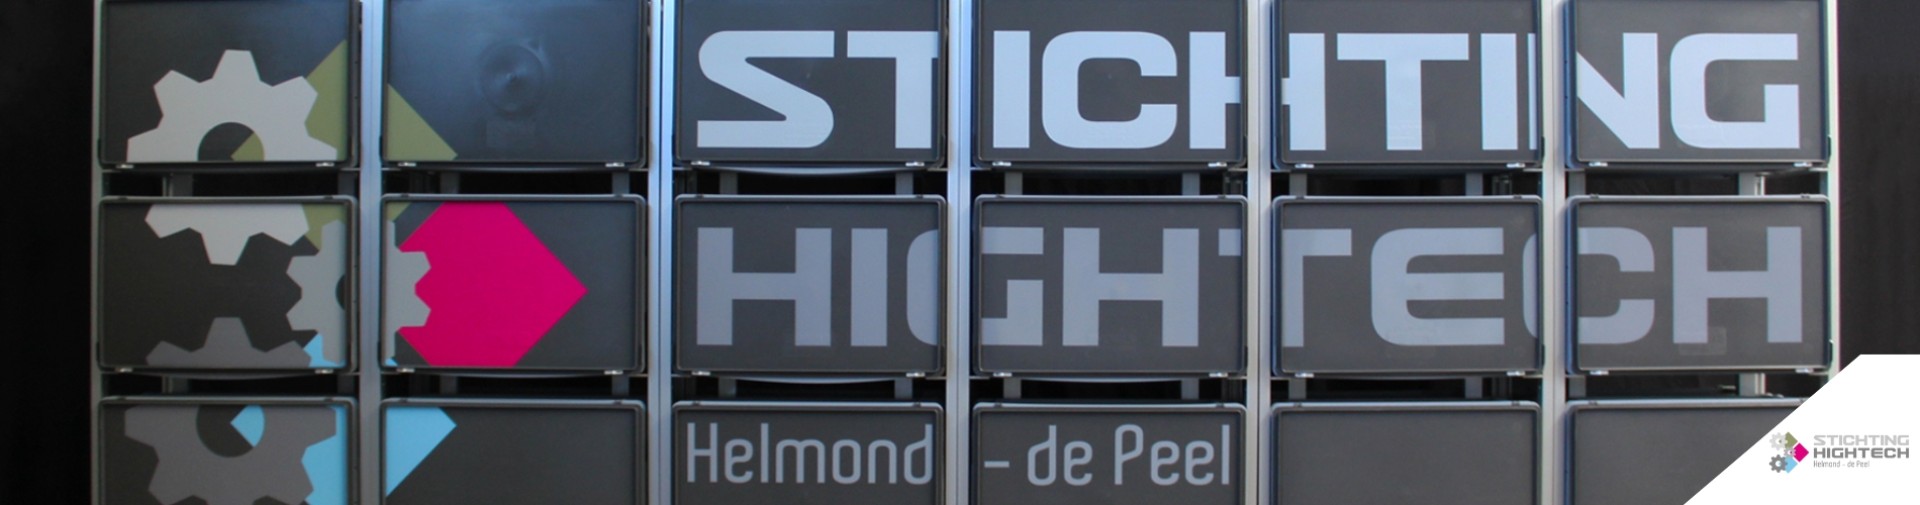 stichting_hightech_helmond_de_peel_banner